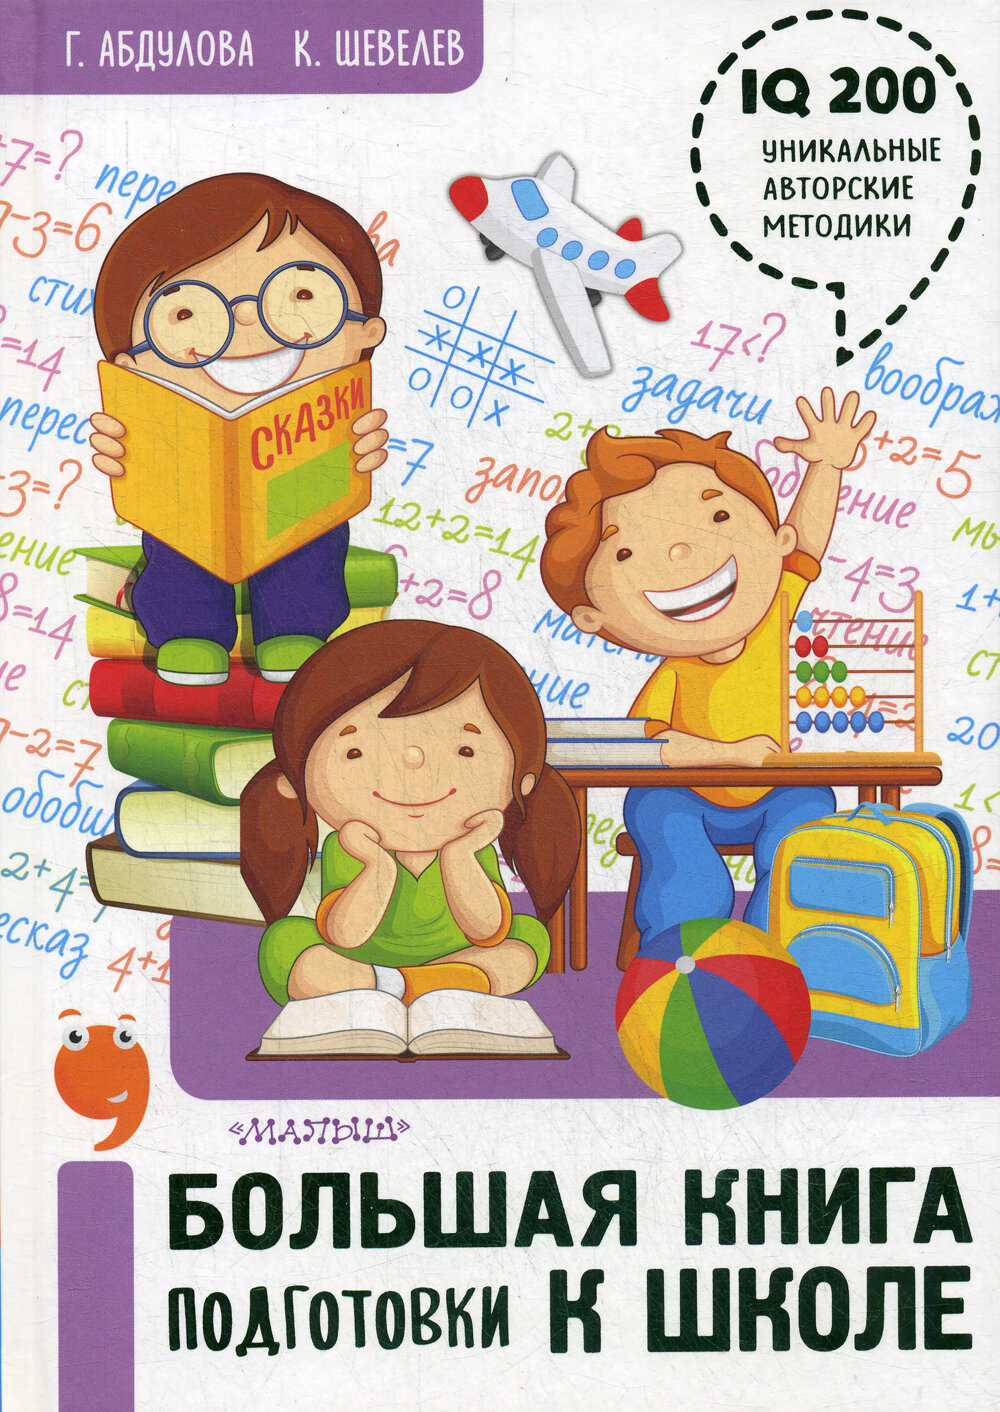 Большая книга подготовки к школе - фото №13